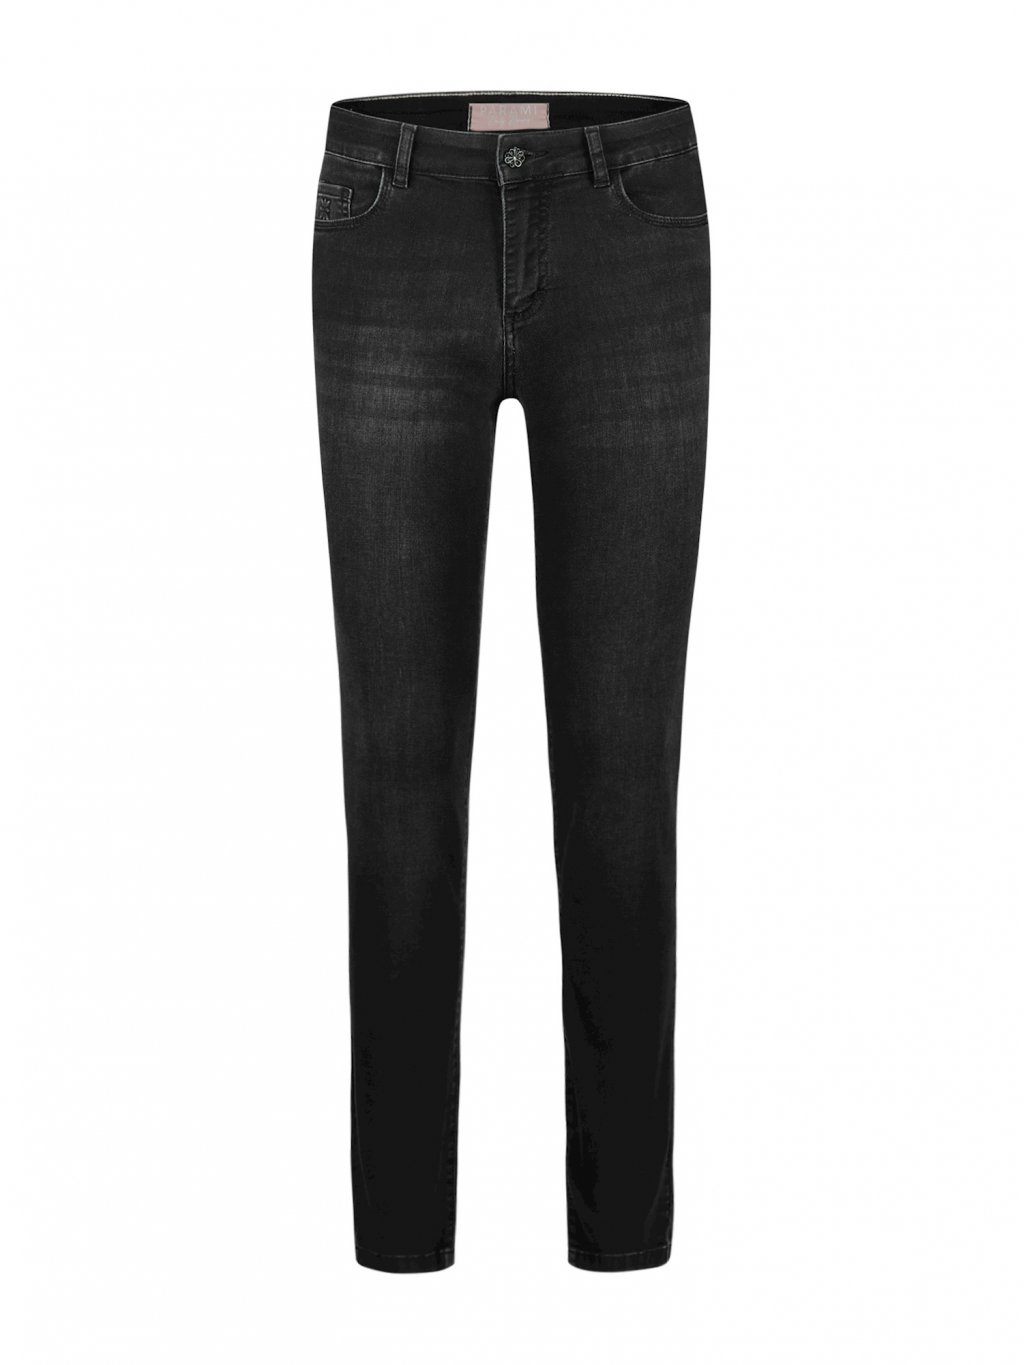 Kalhoty Para Mi Celine D23 lomené černé úzké džíny 